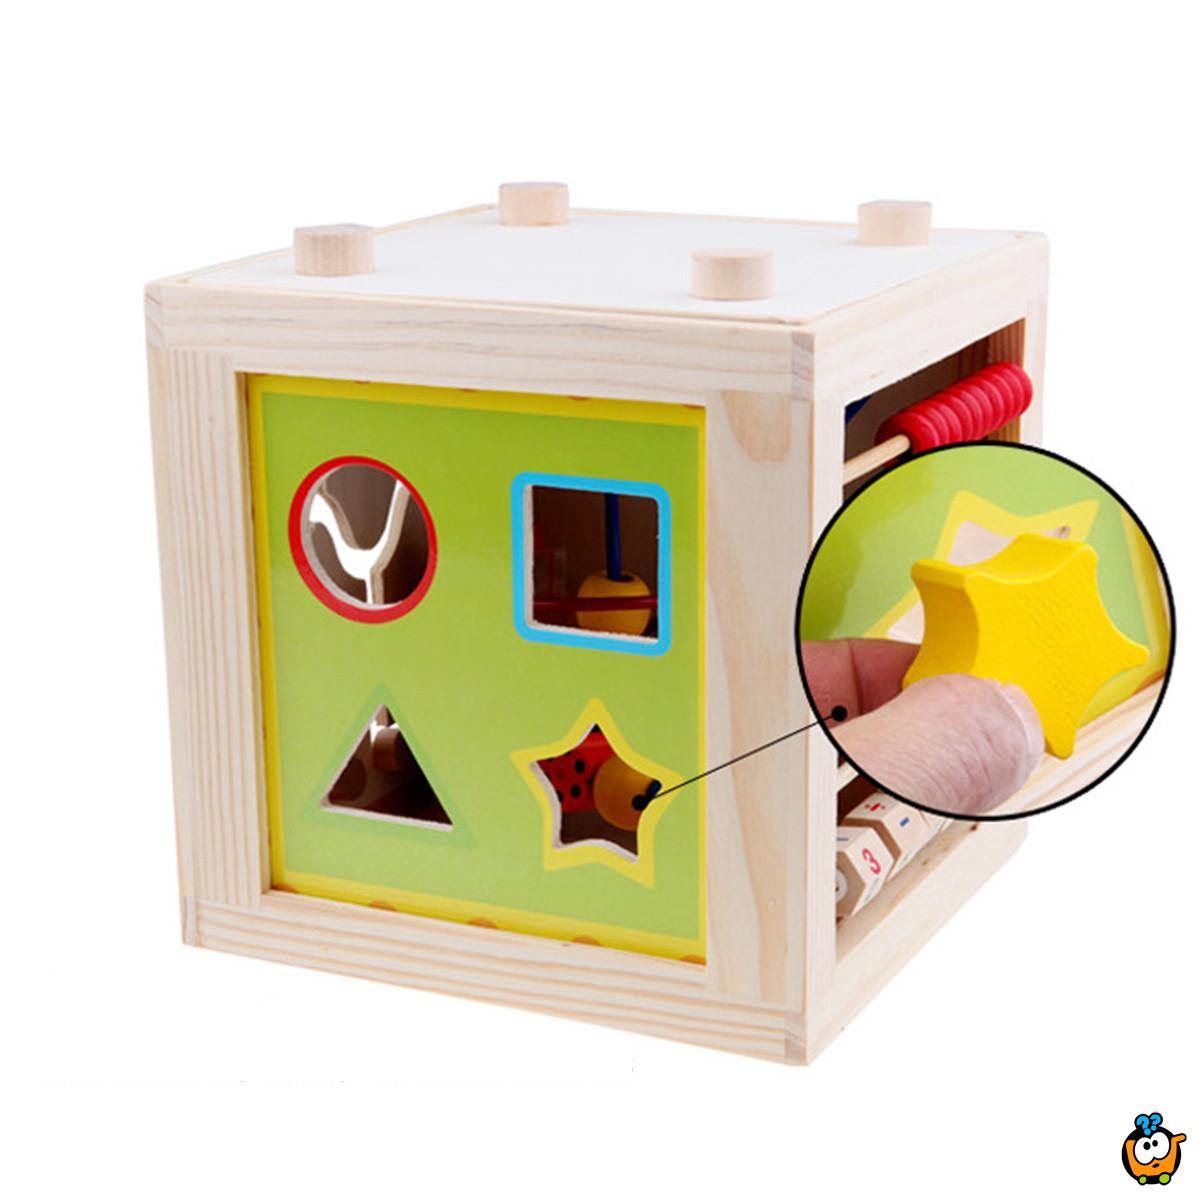 Drvena edukativna kocka za razvoj i stimulaciju Vaše bebe